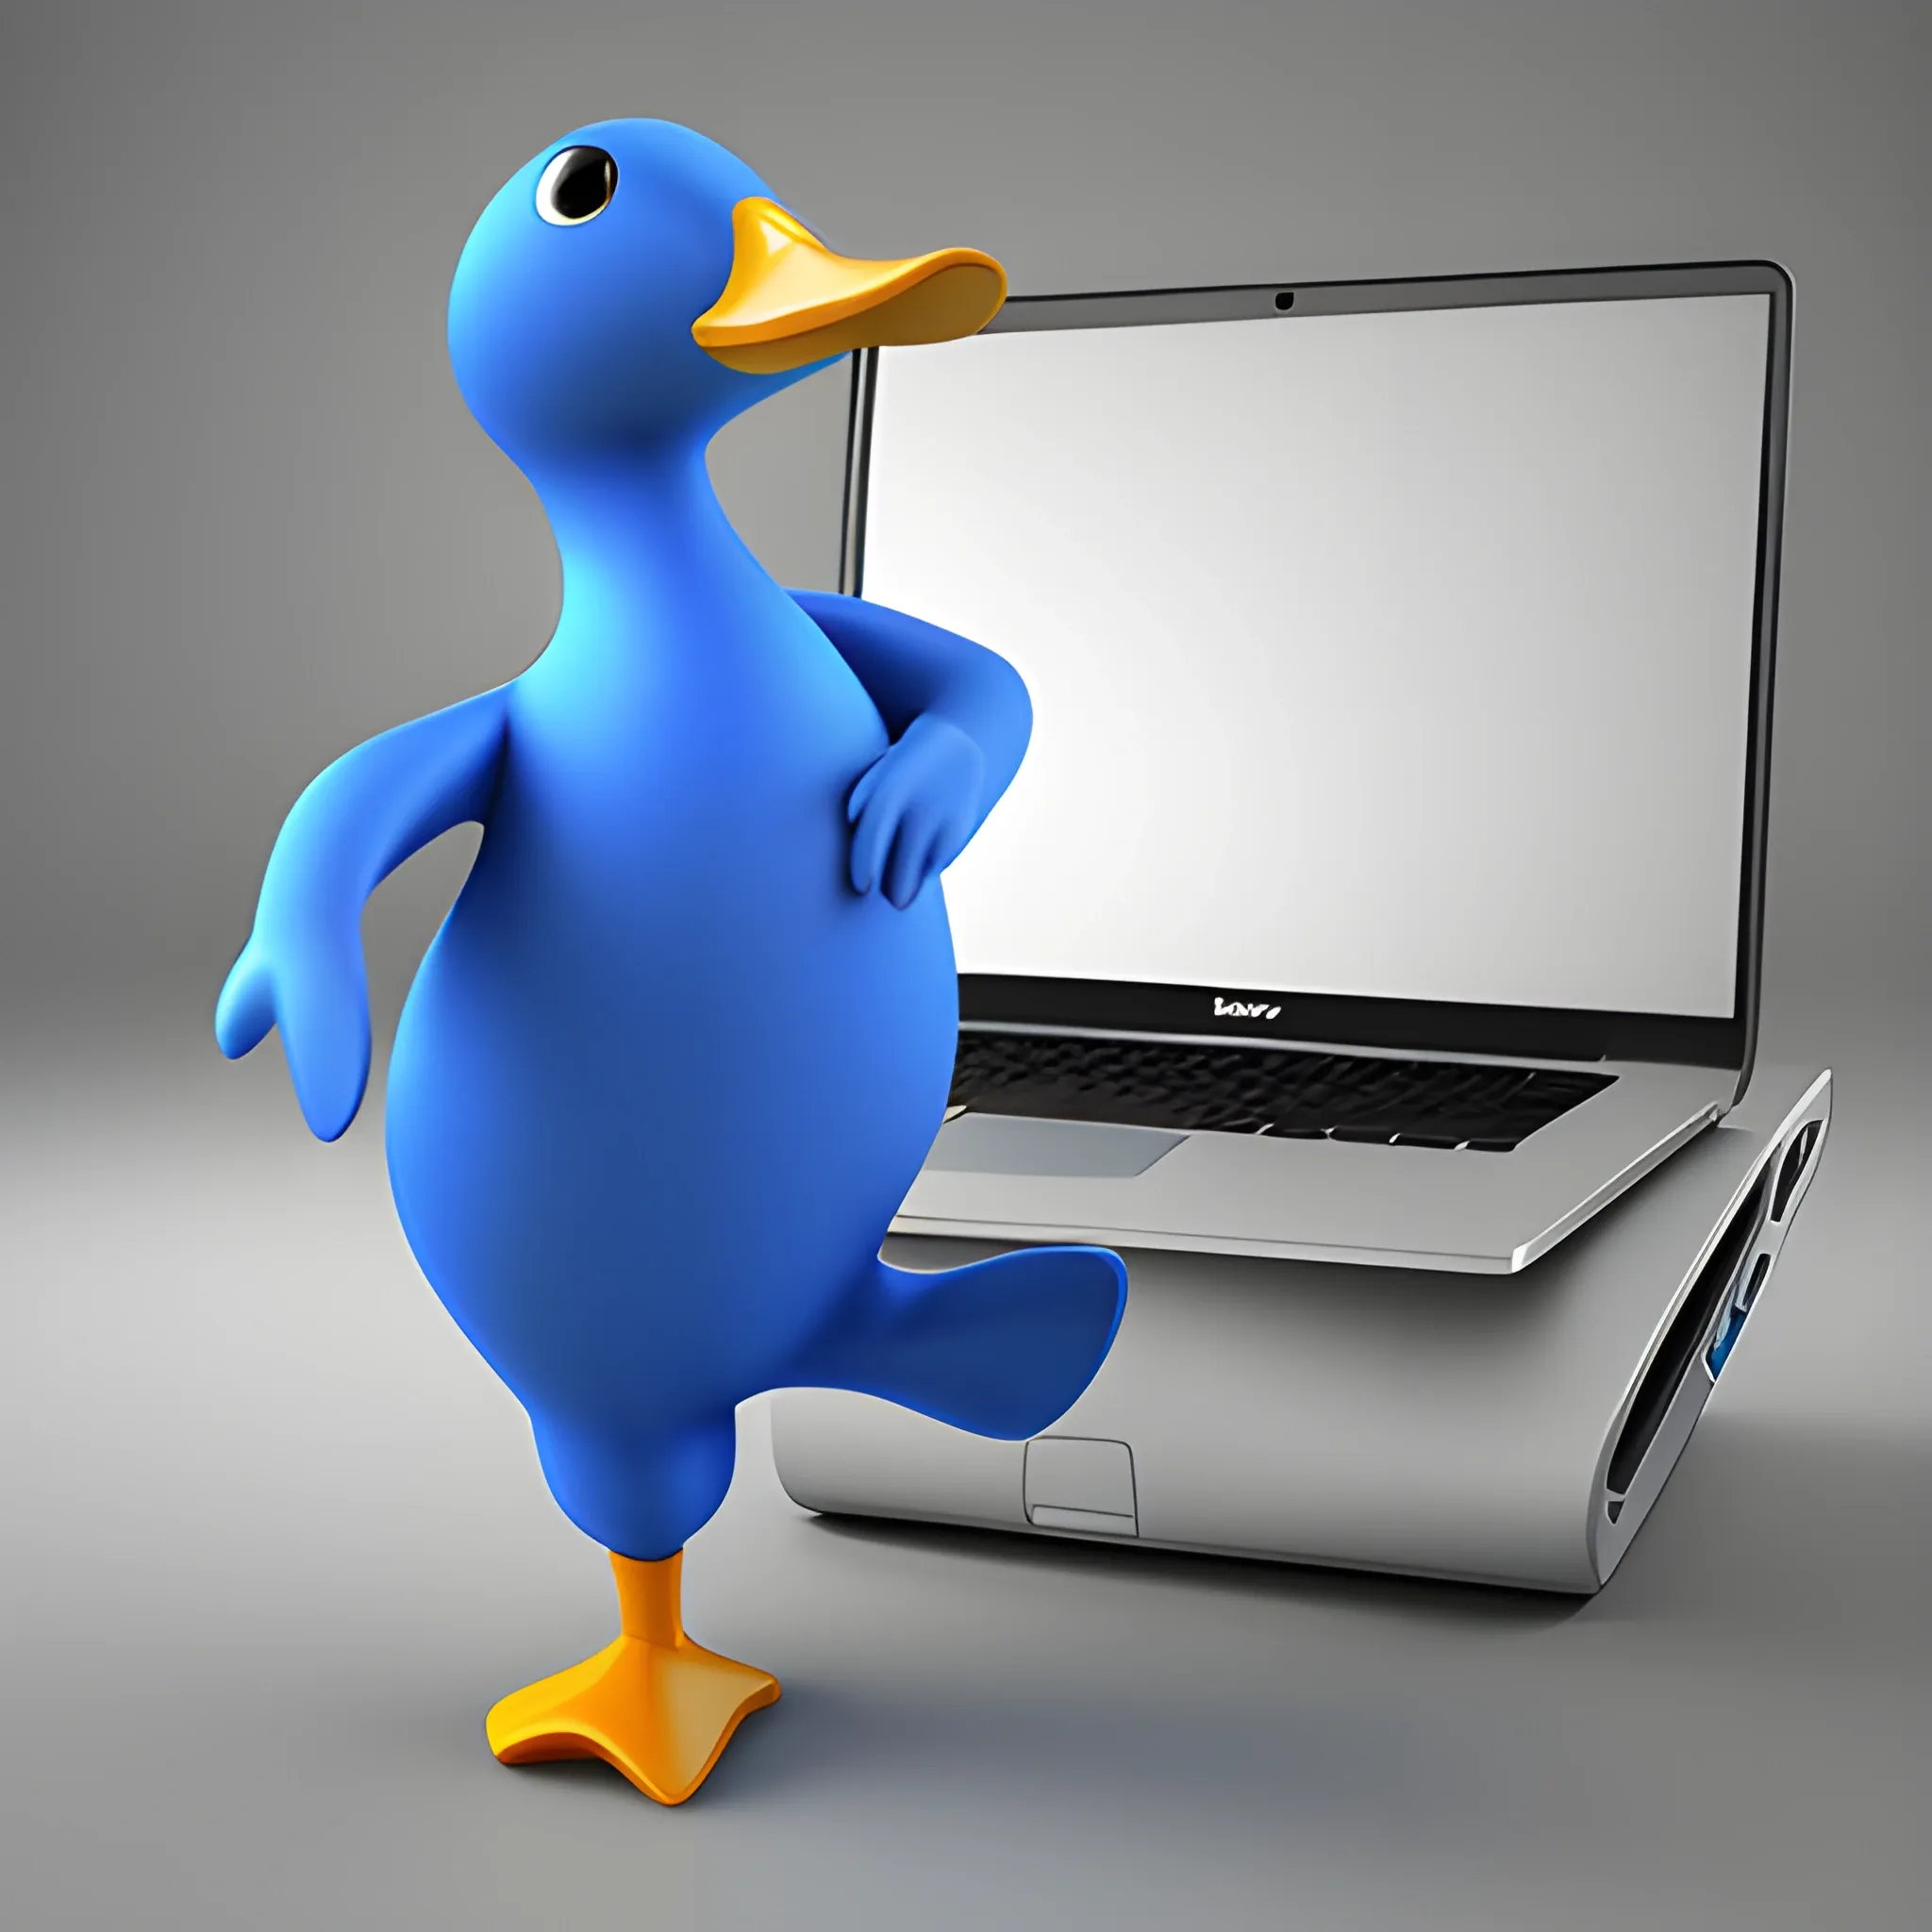 Blue duck, dancing, laptop in hand,,, 3D